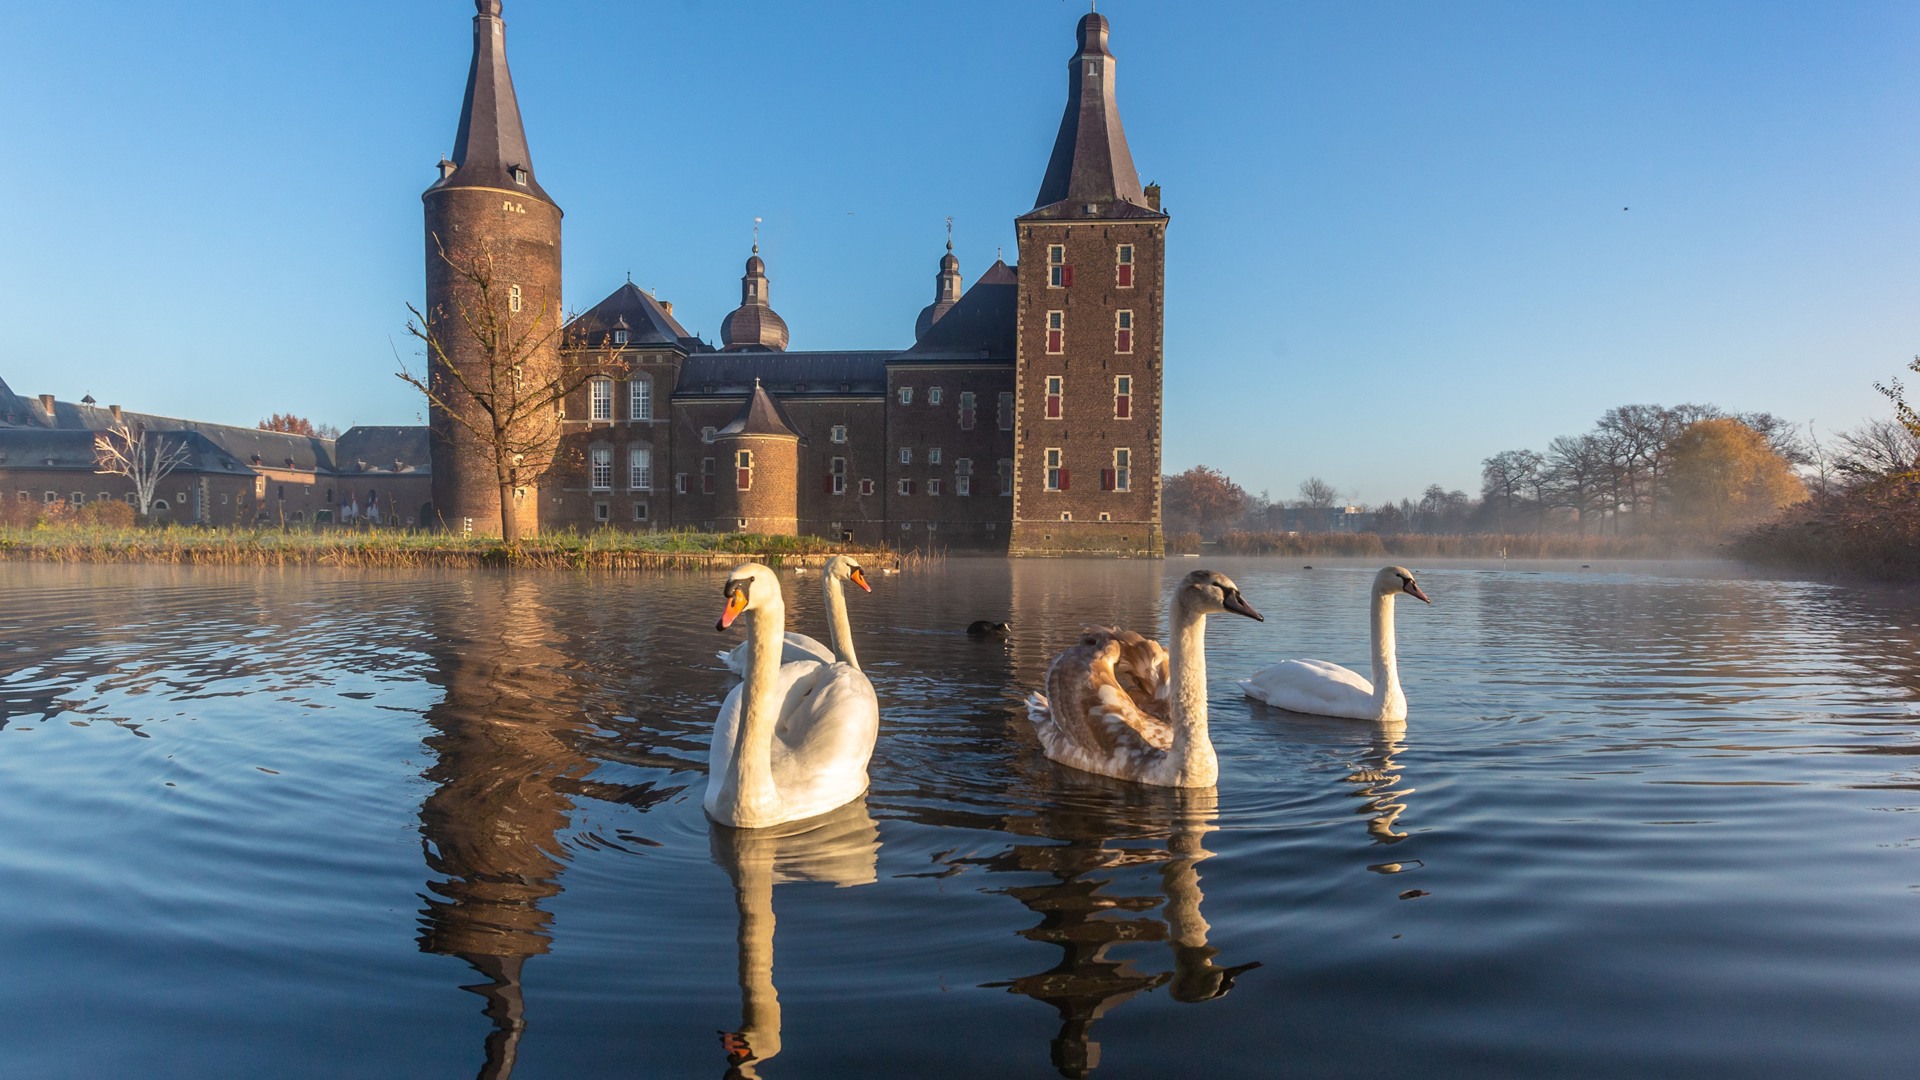 Kasteel Hoensbroek in Heerlen: een leuk uitje tijdens de herfstvakantie